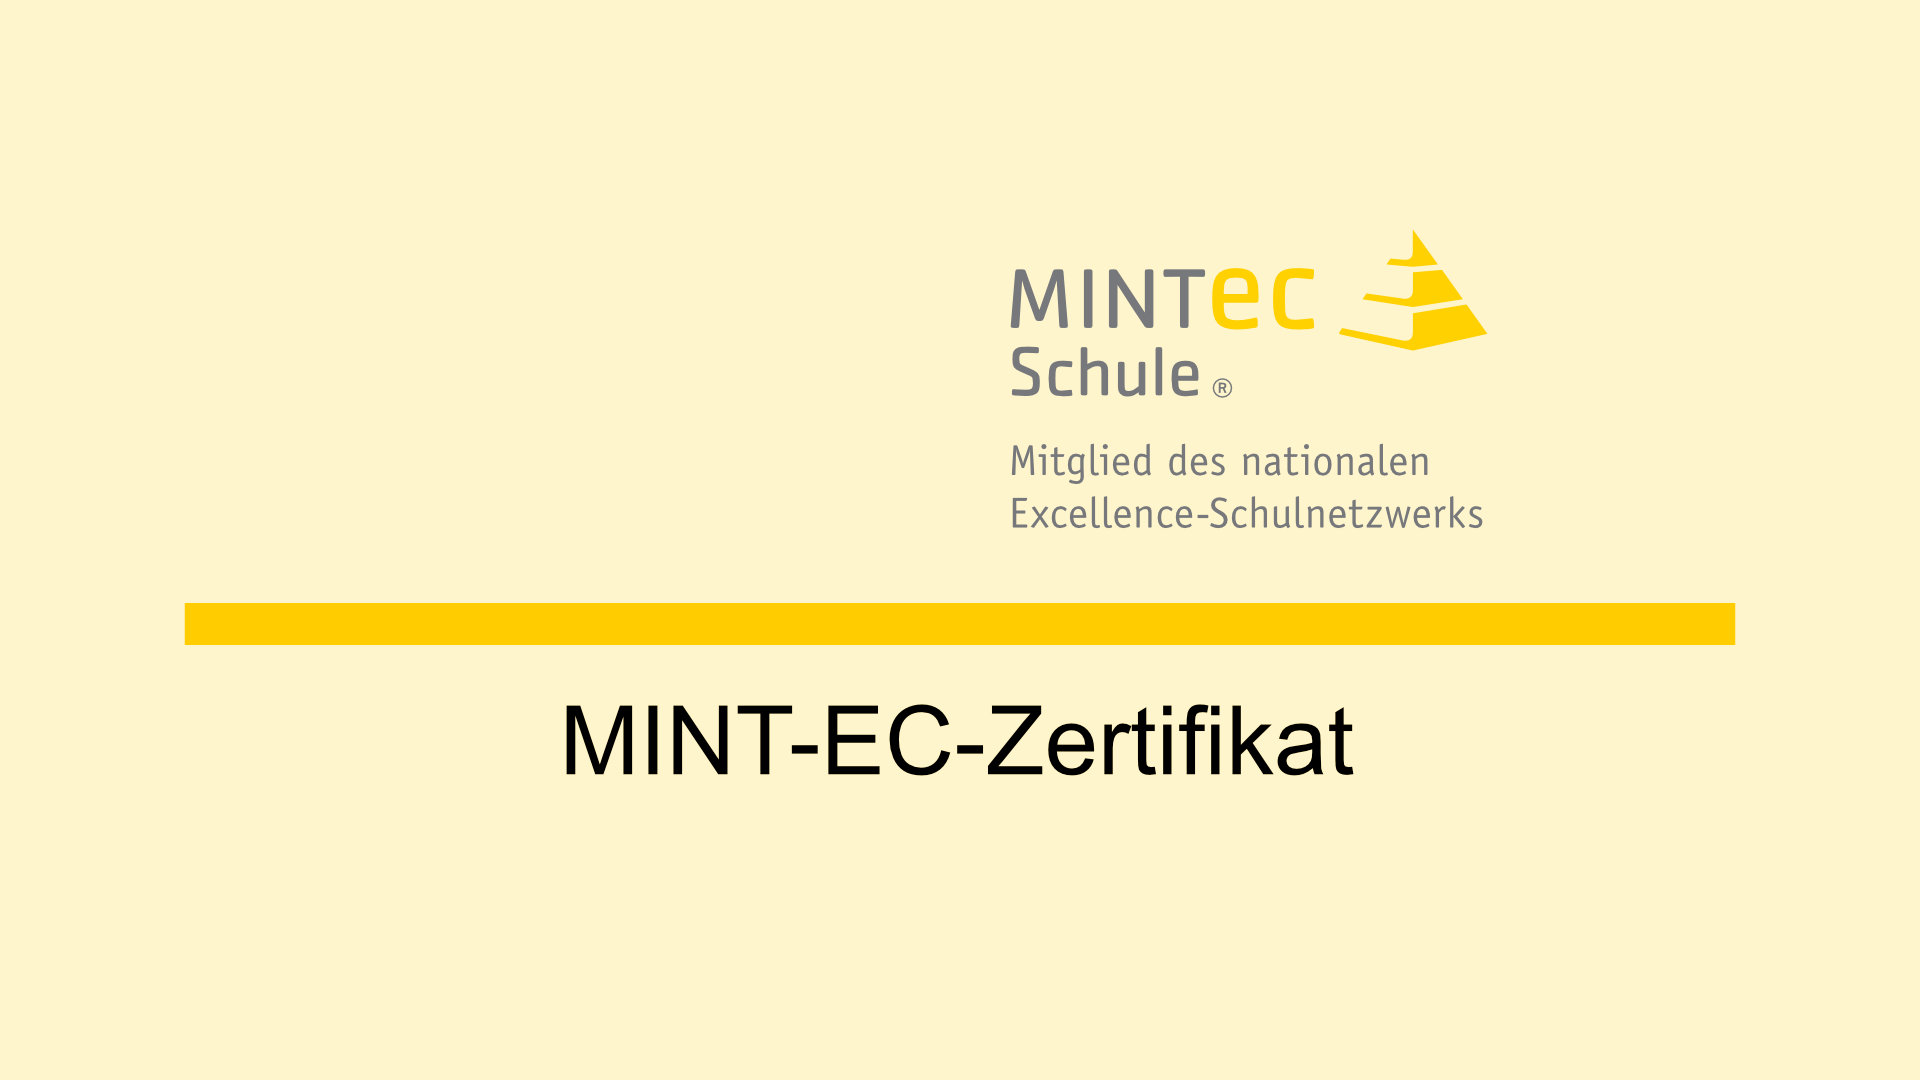 mint-ec-zertifikat_hintergrund-uebersichtsseite.jpg